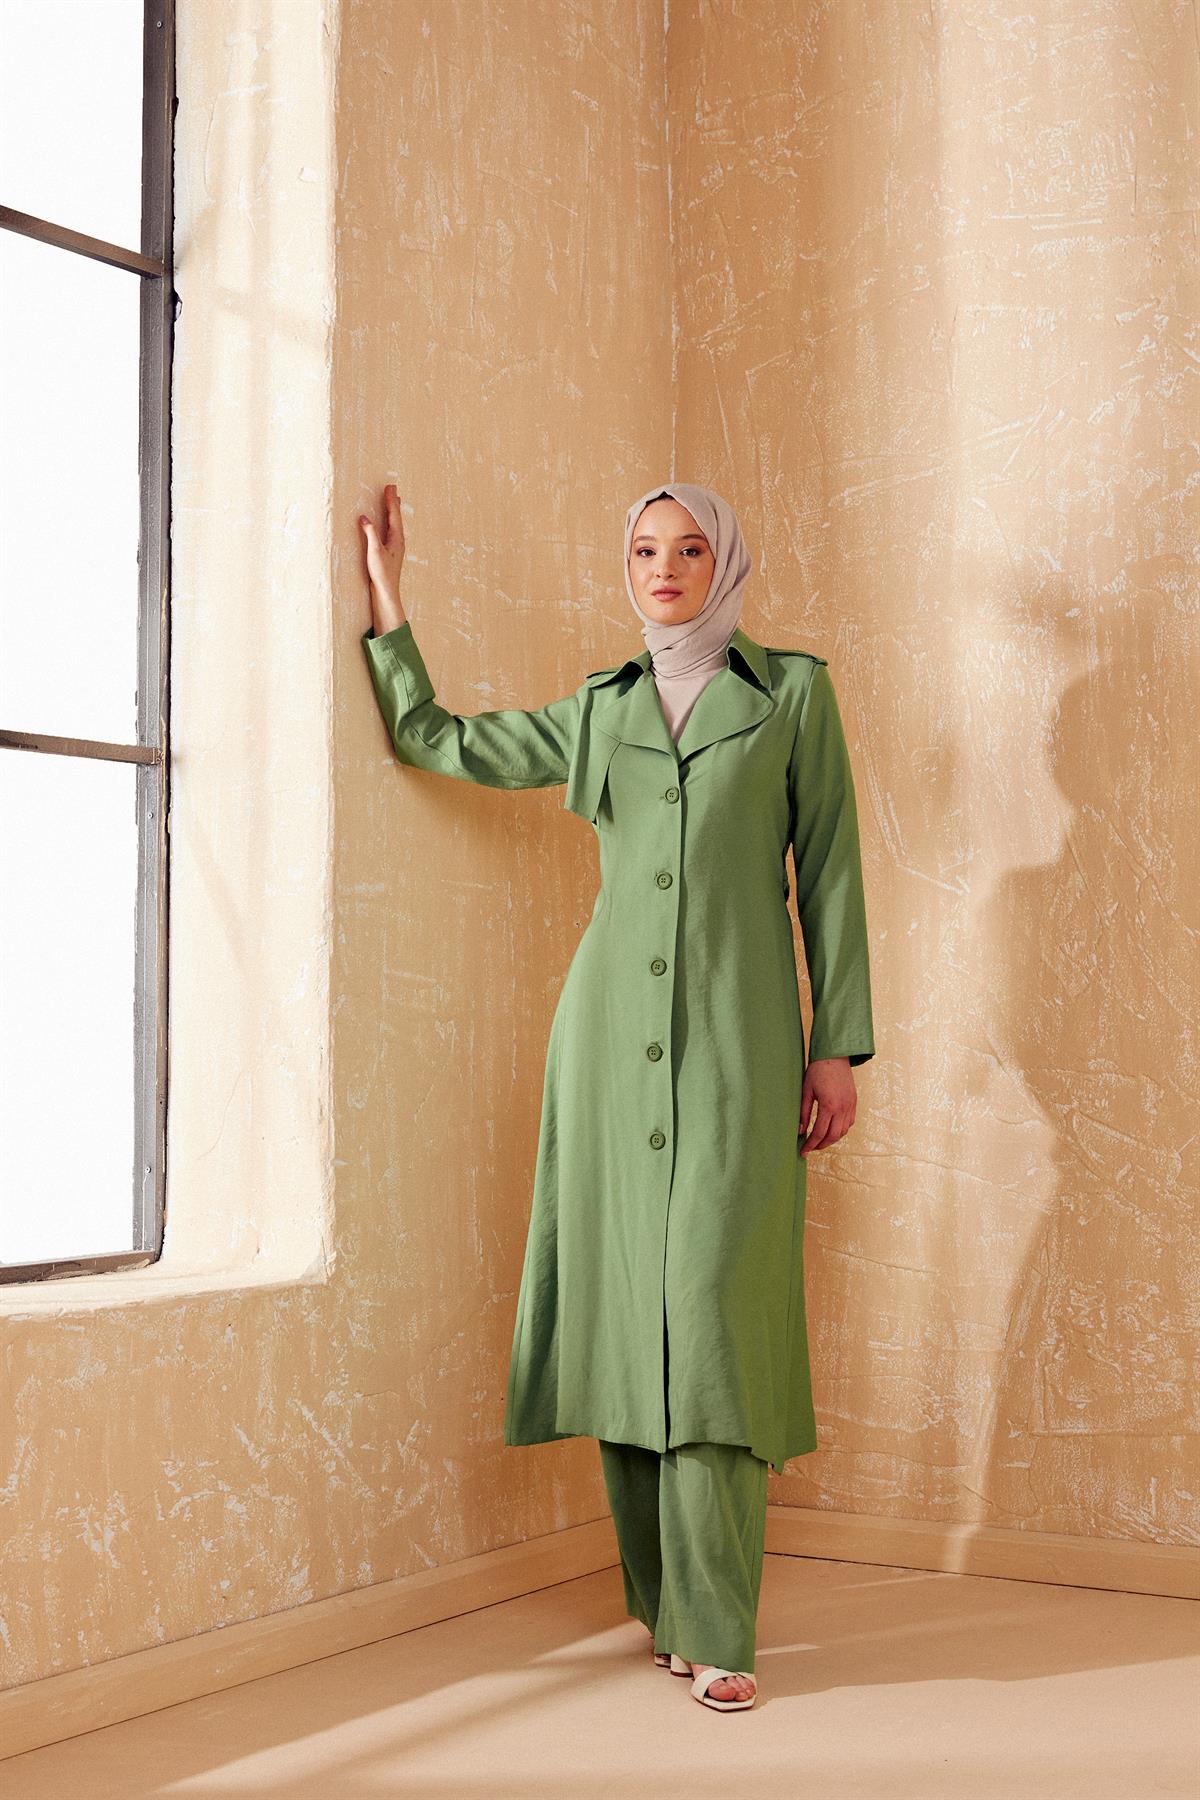 Kadın Dış Giyim Modelleri & Fiyatları | Tuğba Online